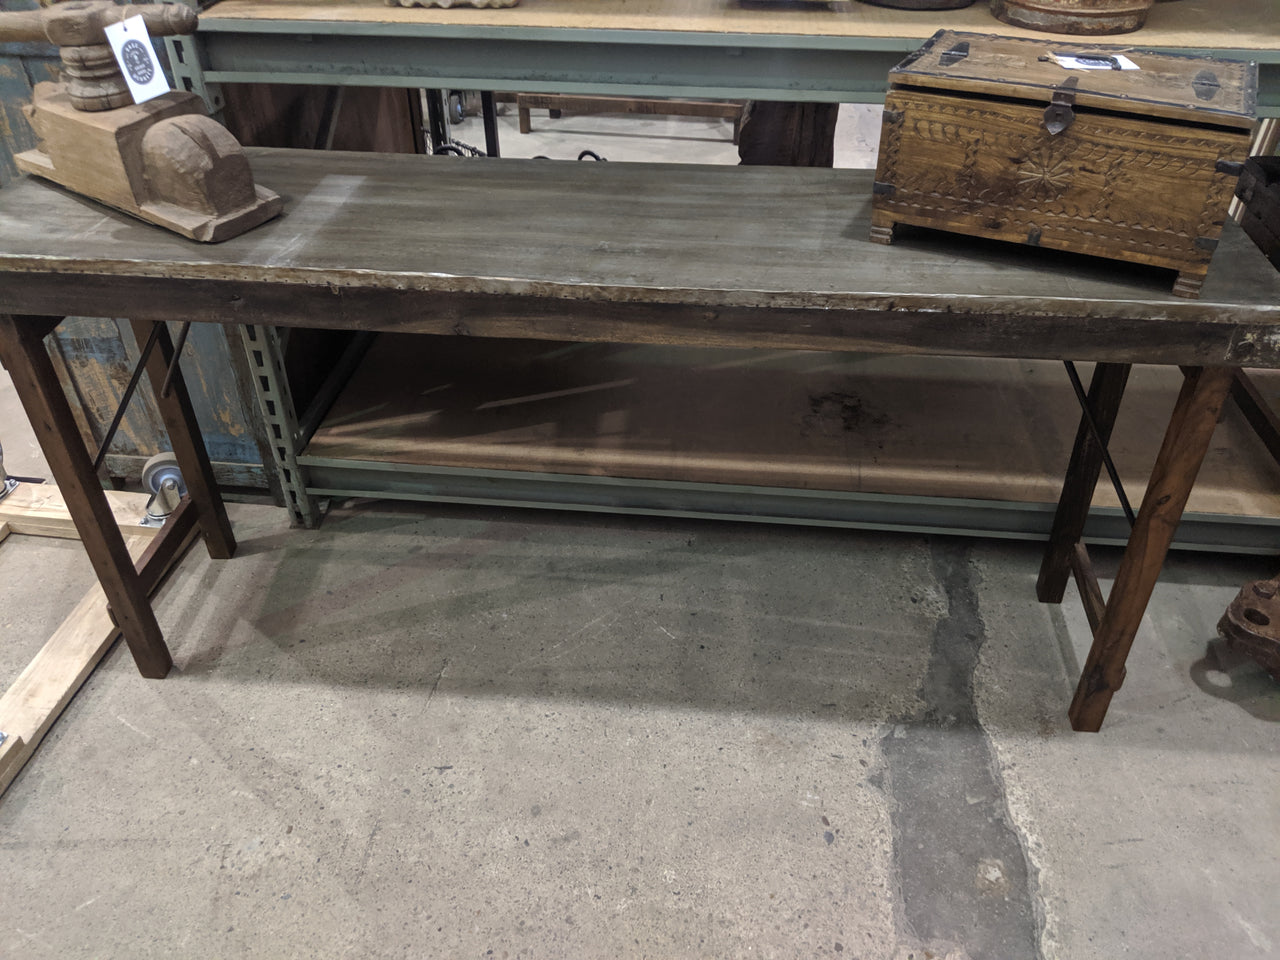 Vintage Industrial Metal Work Table, Gray Steel Workbench, Rustic